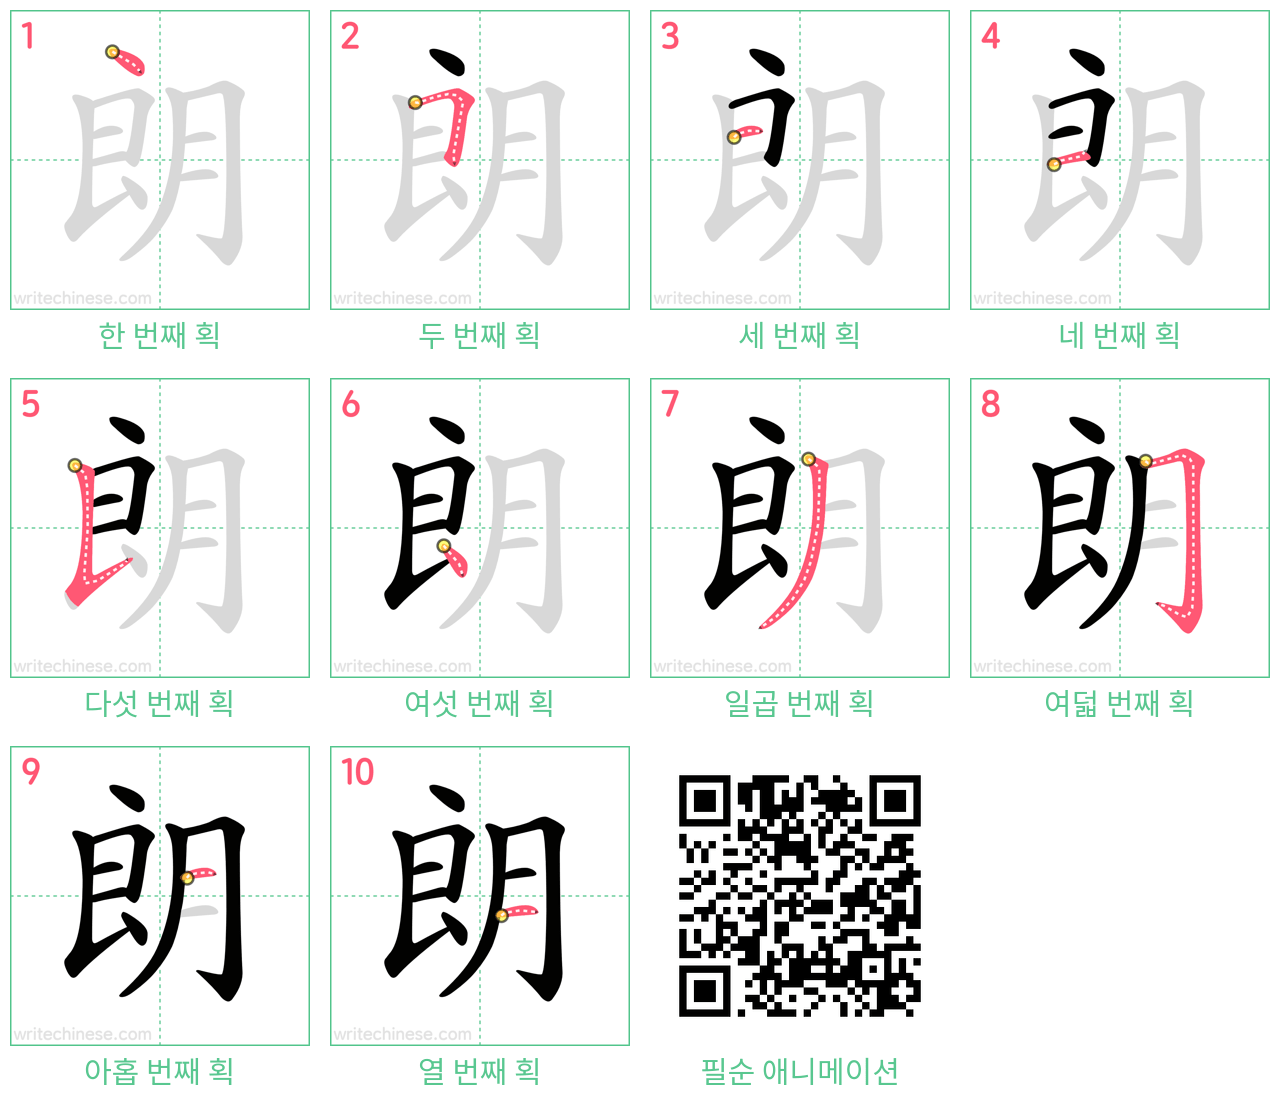 朗 step-by-step stroke order diagrams